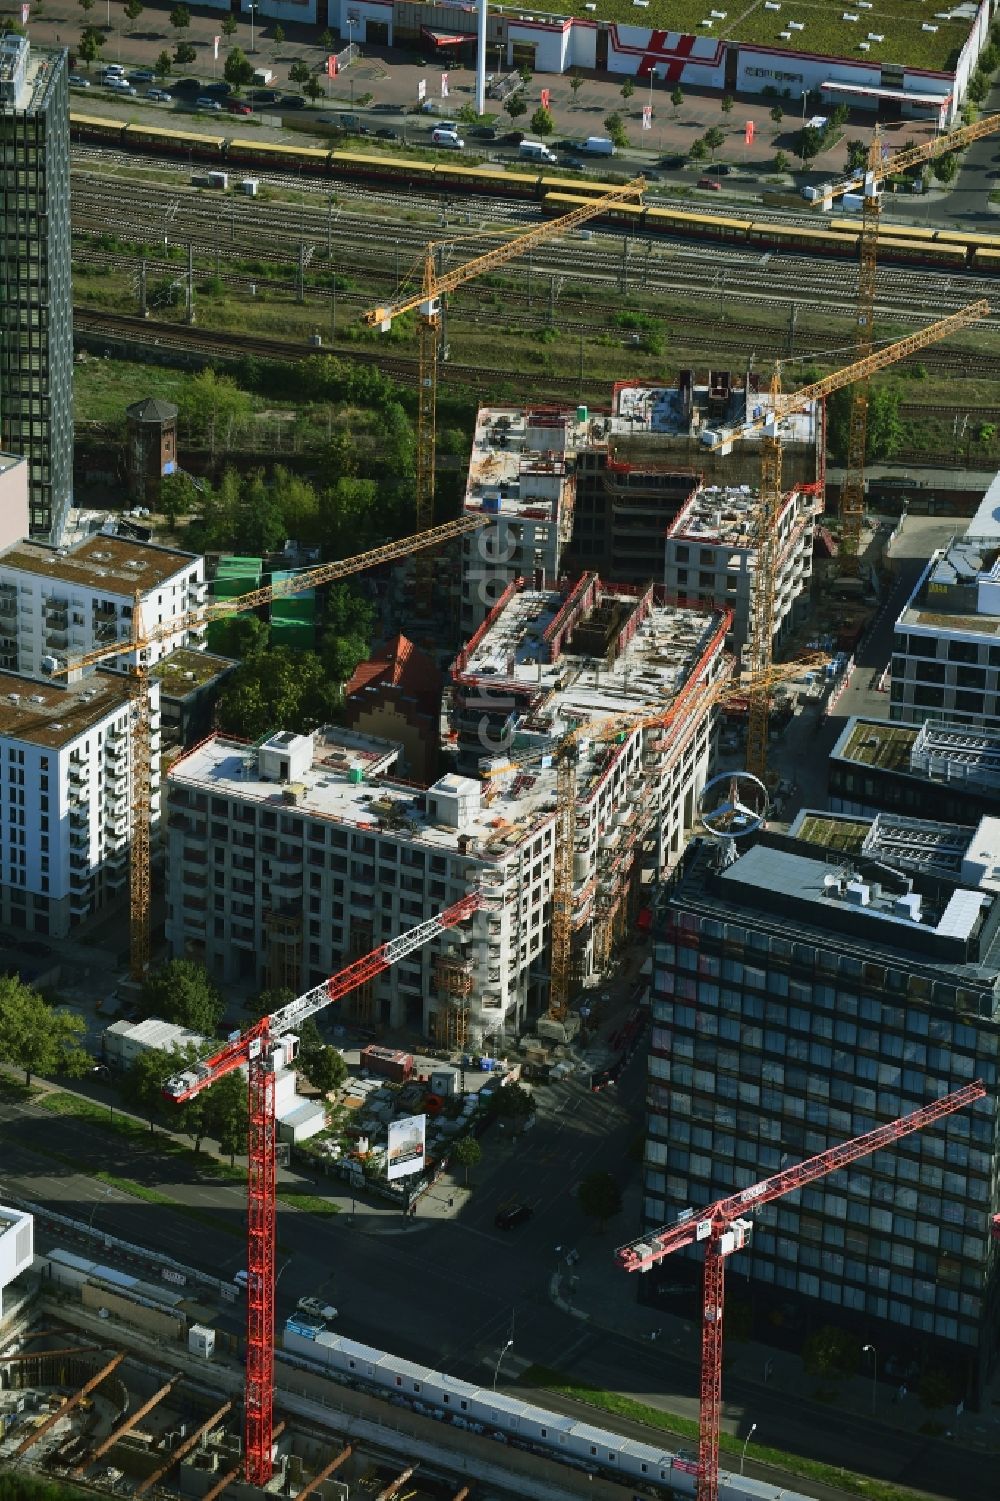 Luftbild Berlin - Baustellen zum Wohn- und Geschäftshausneubau Max & Moritz im Stadtteil Friedrichshain von Berlin